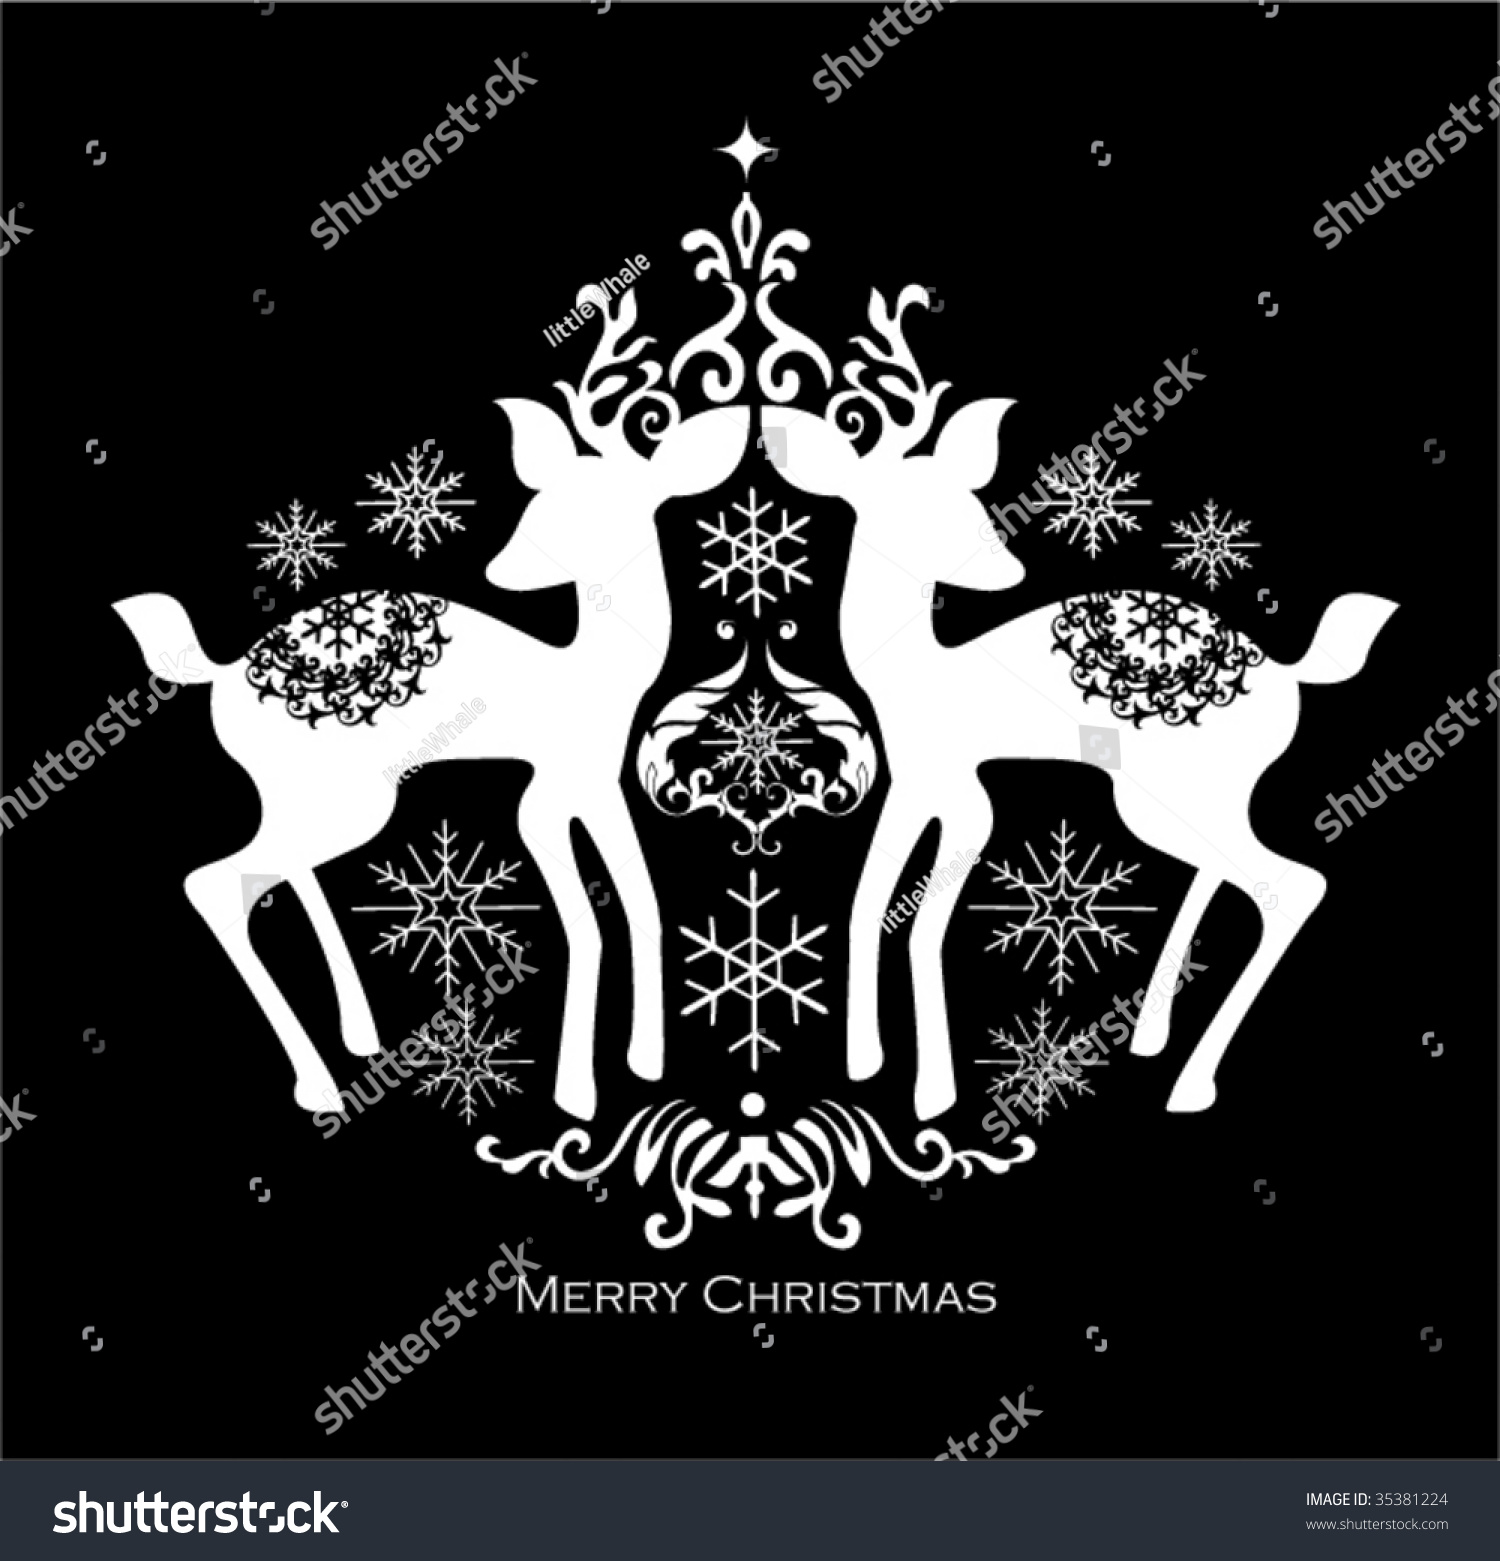 Black White Christmas Design Stock Vector 35381224 - Shutterstock